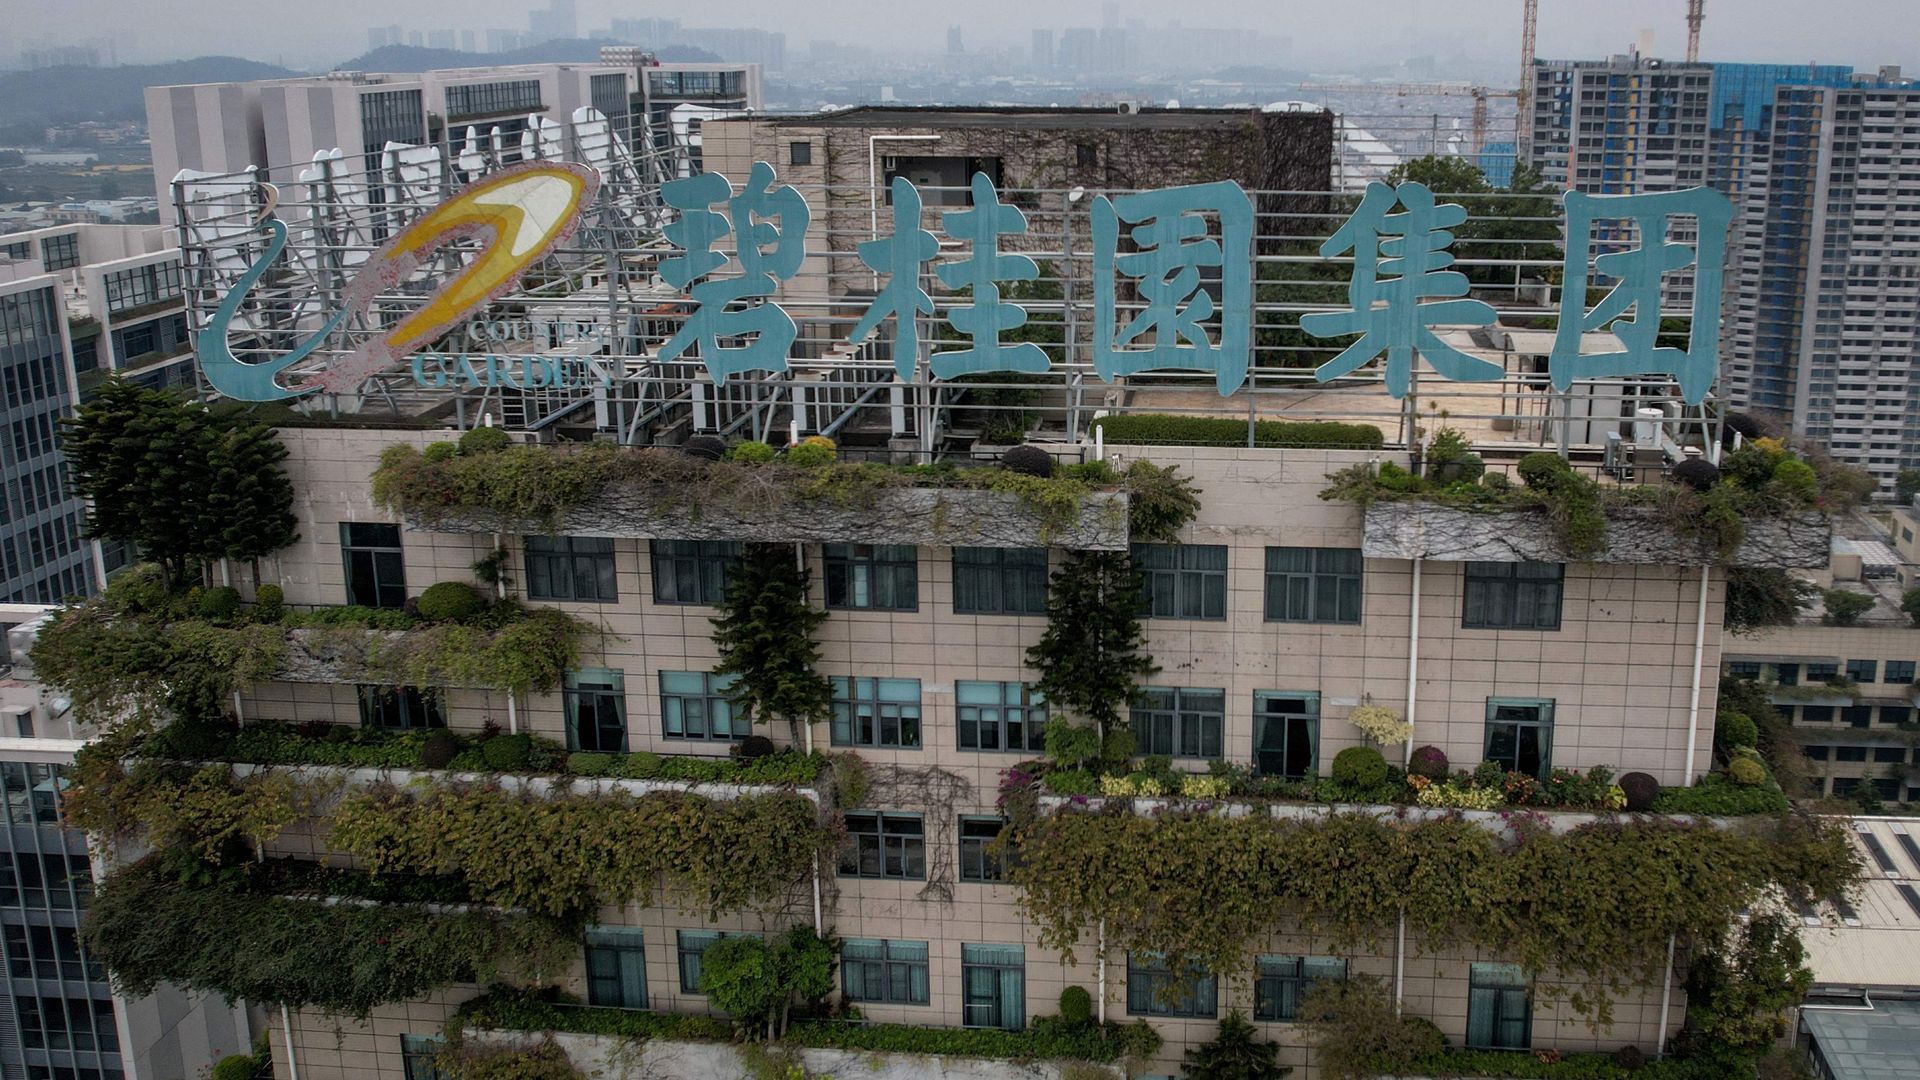 country garden: chinesische gläubiger fordern liquidierung von weiterem immobilienriesen